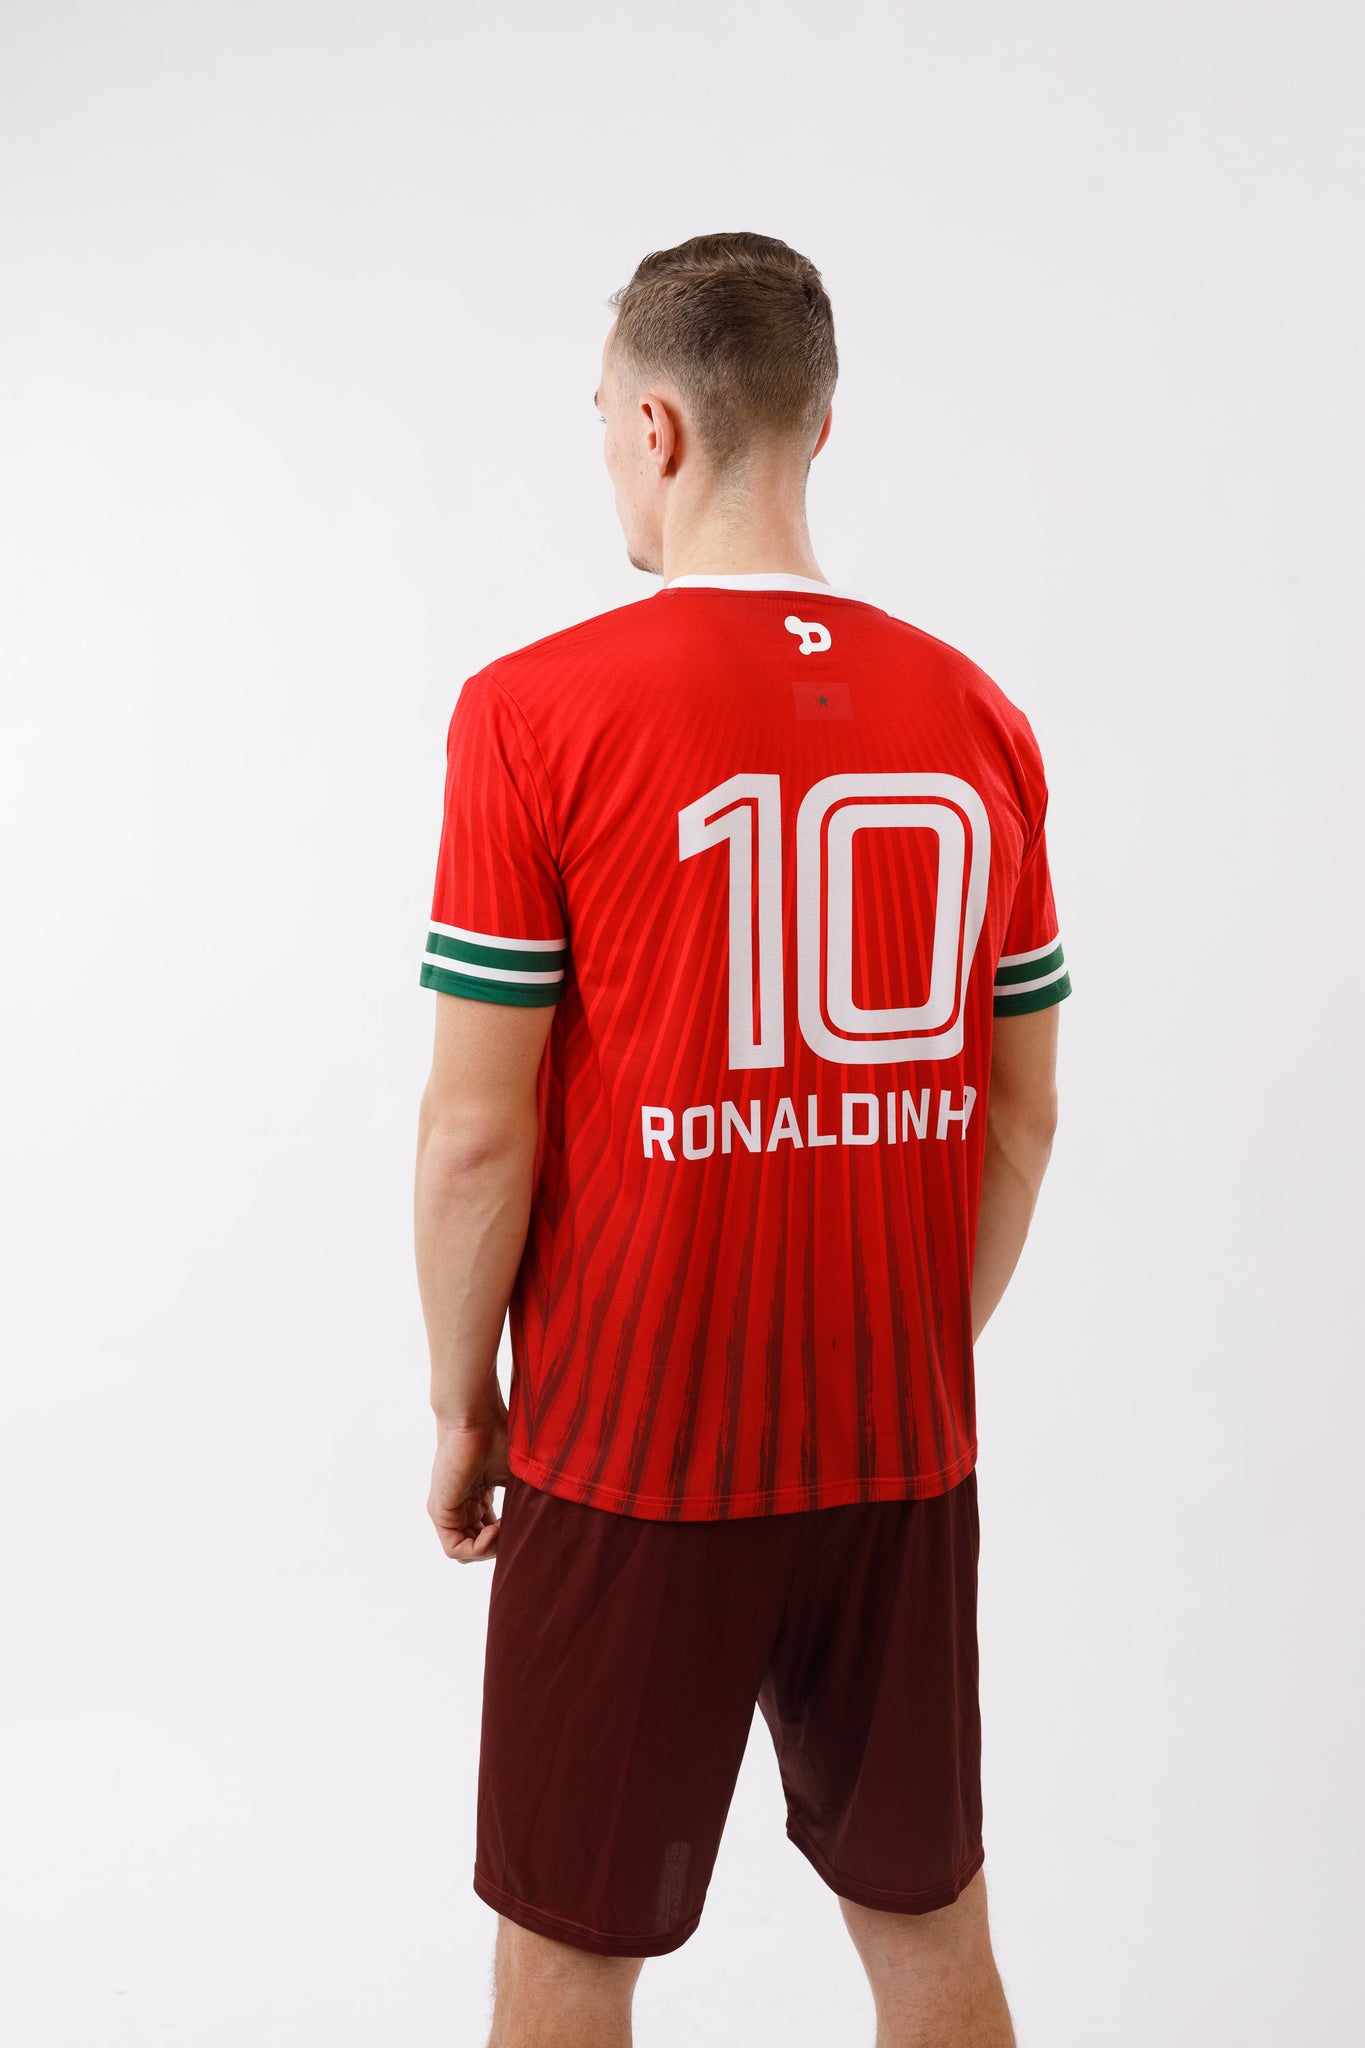 Ronaldinho Morocco Jersey/Camisa